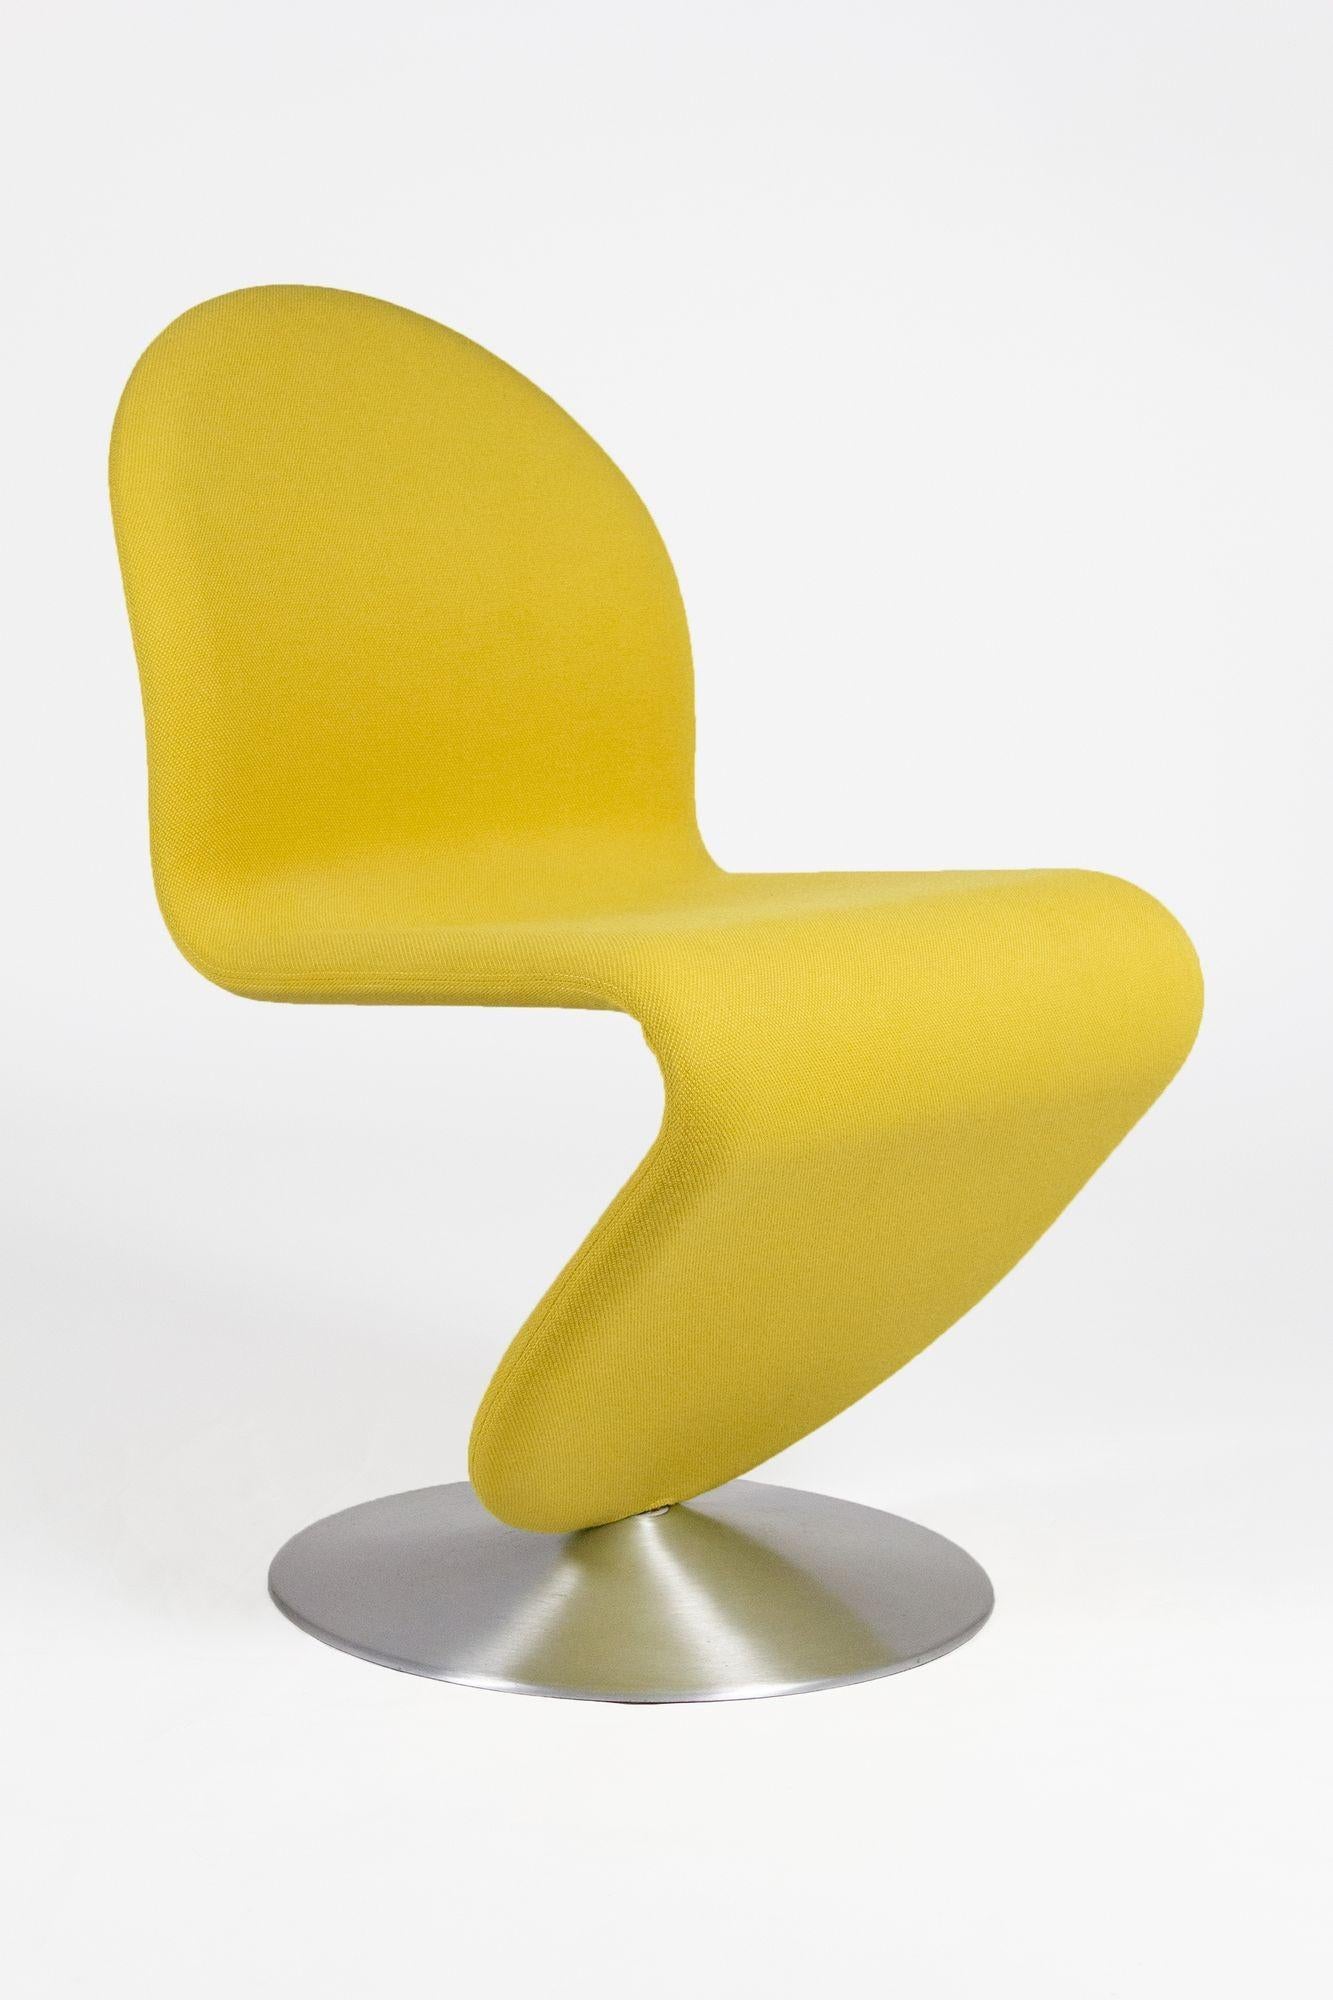 Wunderschönes Paar 1-2-3 Lounge Chairs von Verner Panton für Fritz Hansen, 1970er Jahre.